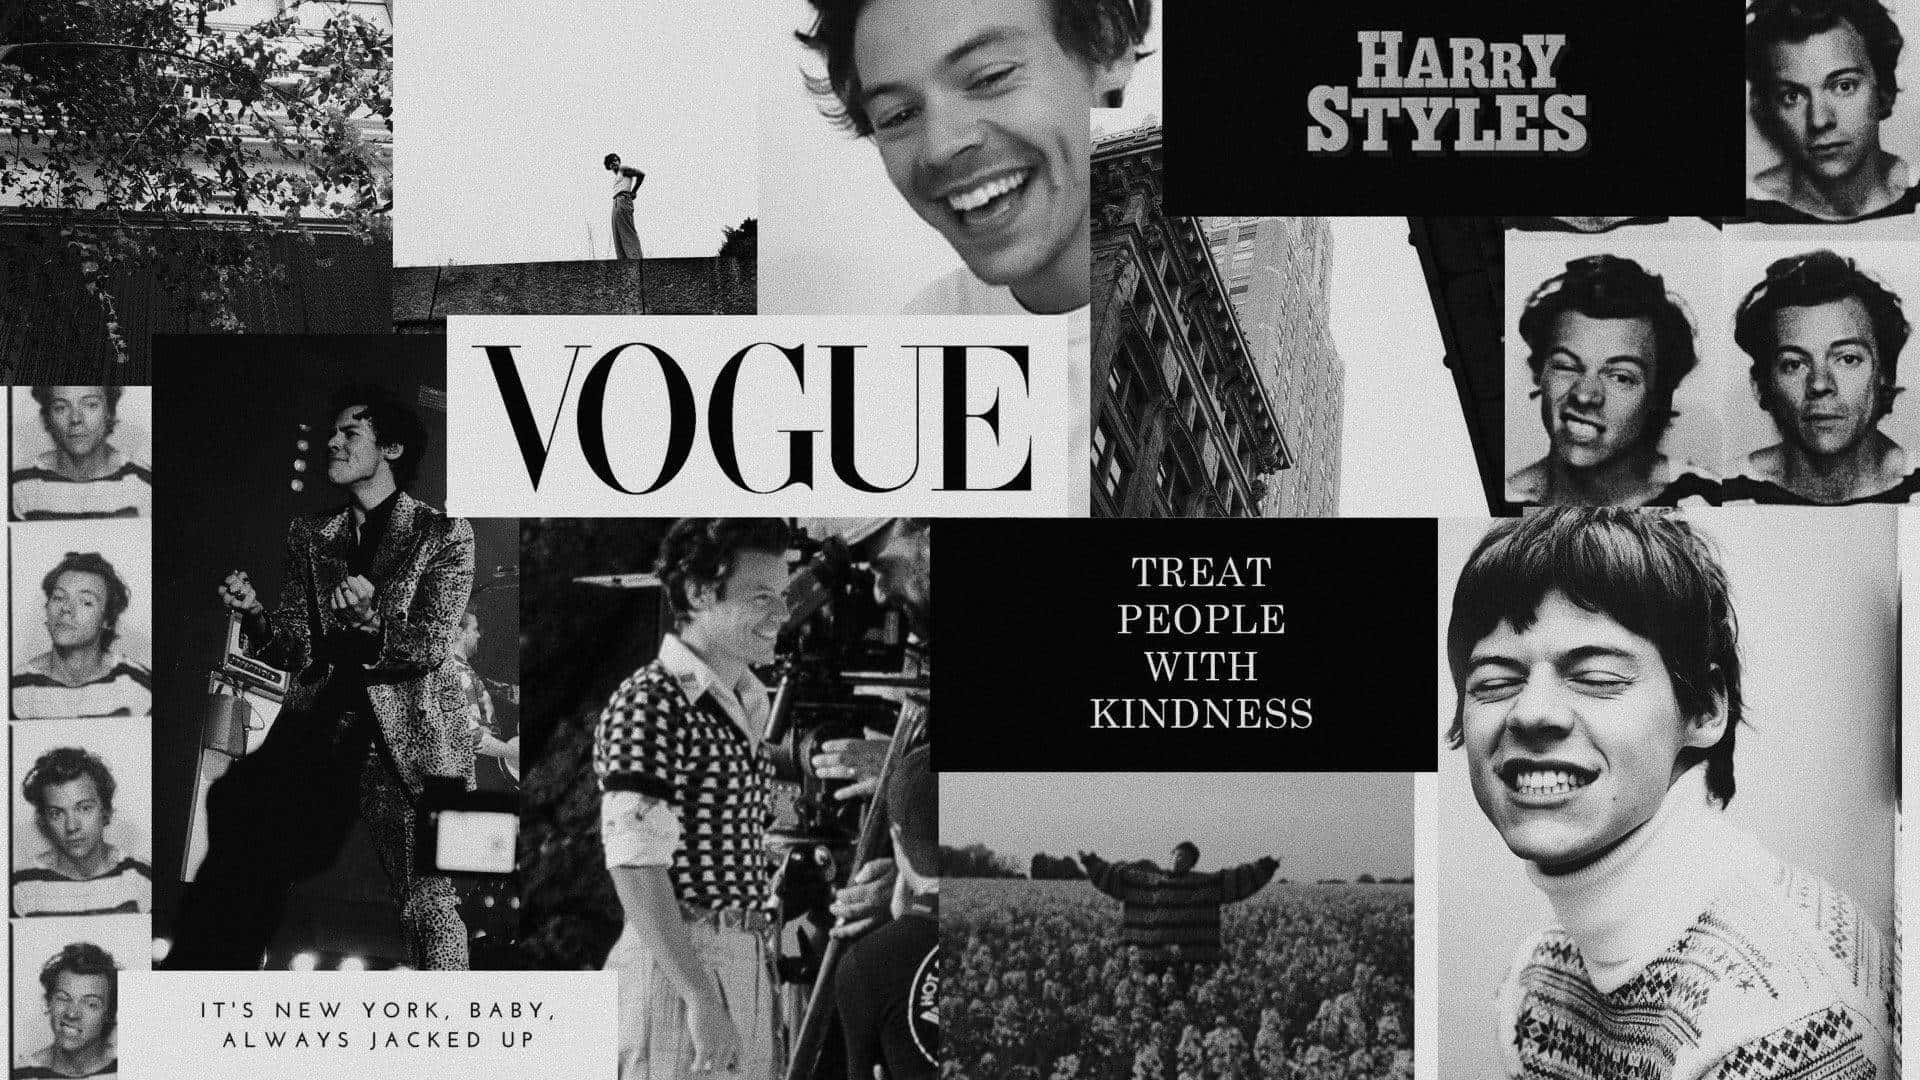 Gingham Wallpaper: Harry Styles står i sort-hvid gingham tapet. Wallpaper